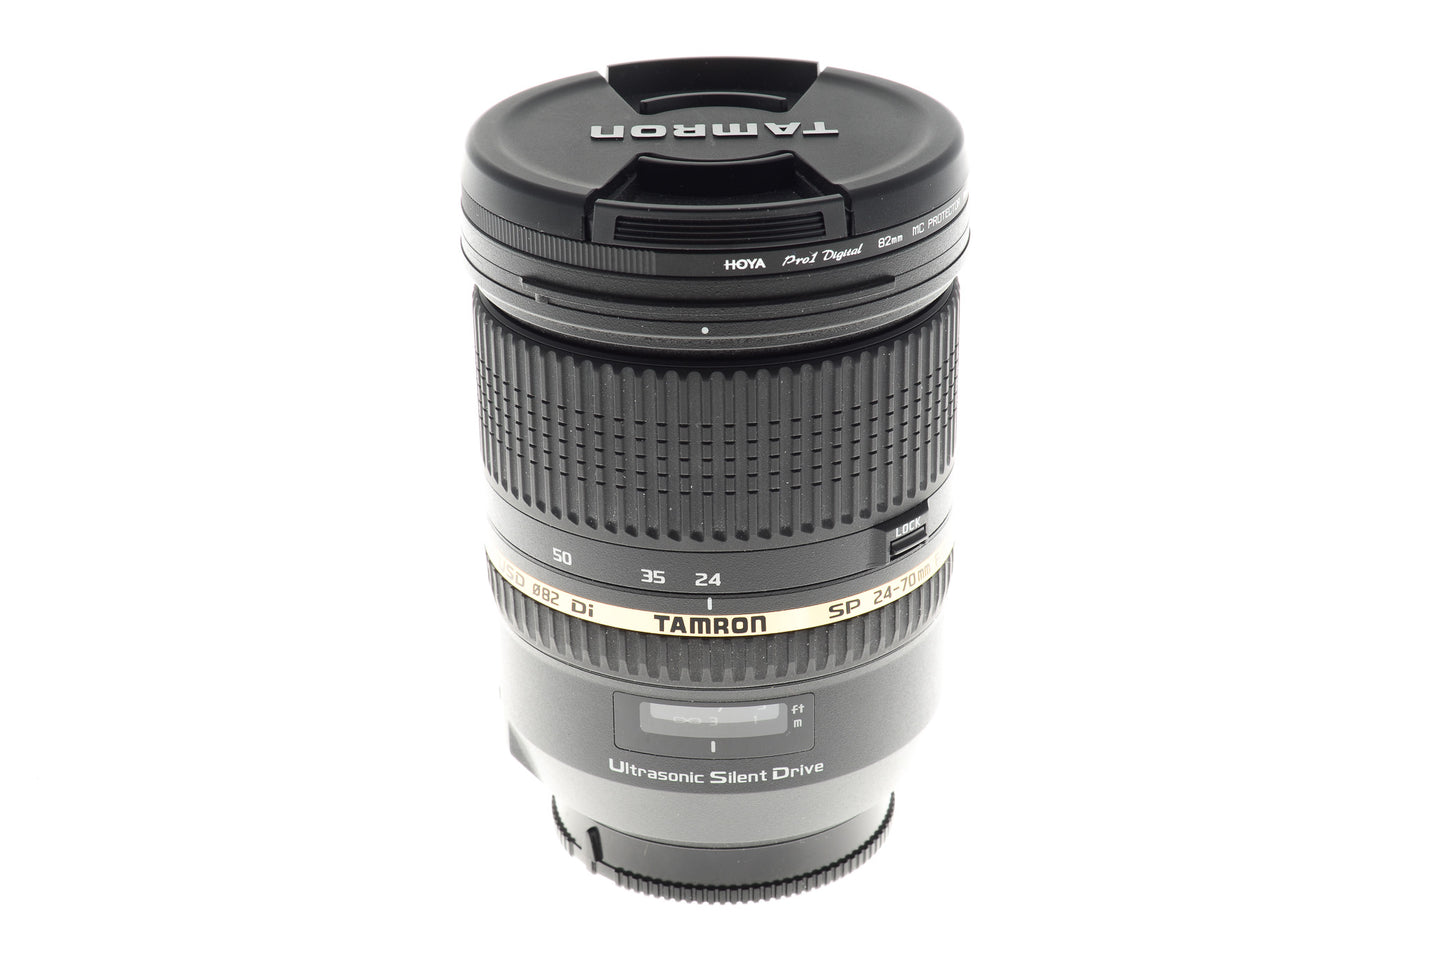 Tamron 24-70mm f2.8 SP DI USD (A007) - Lens